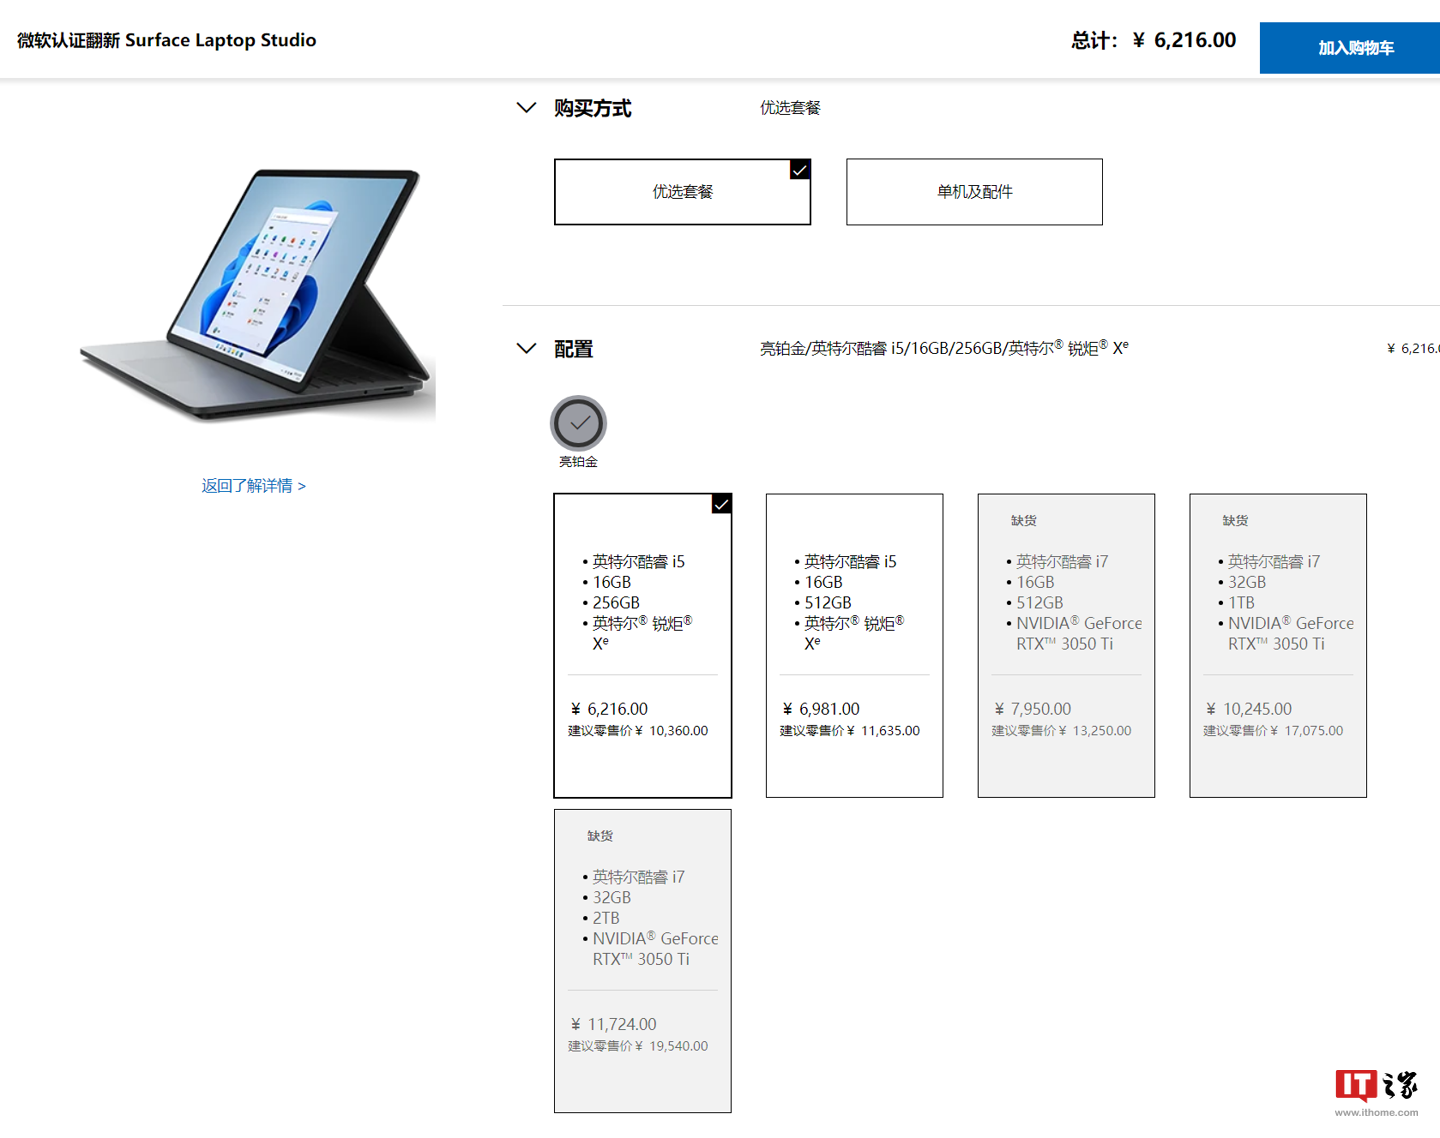 微软 Surface Laptop Studio 国行官翻版重新补货，6216 元起